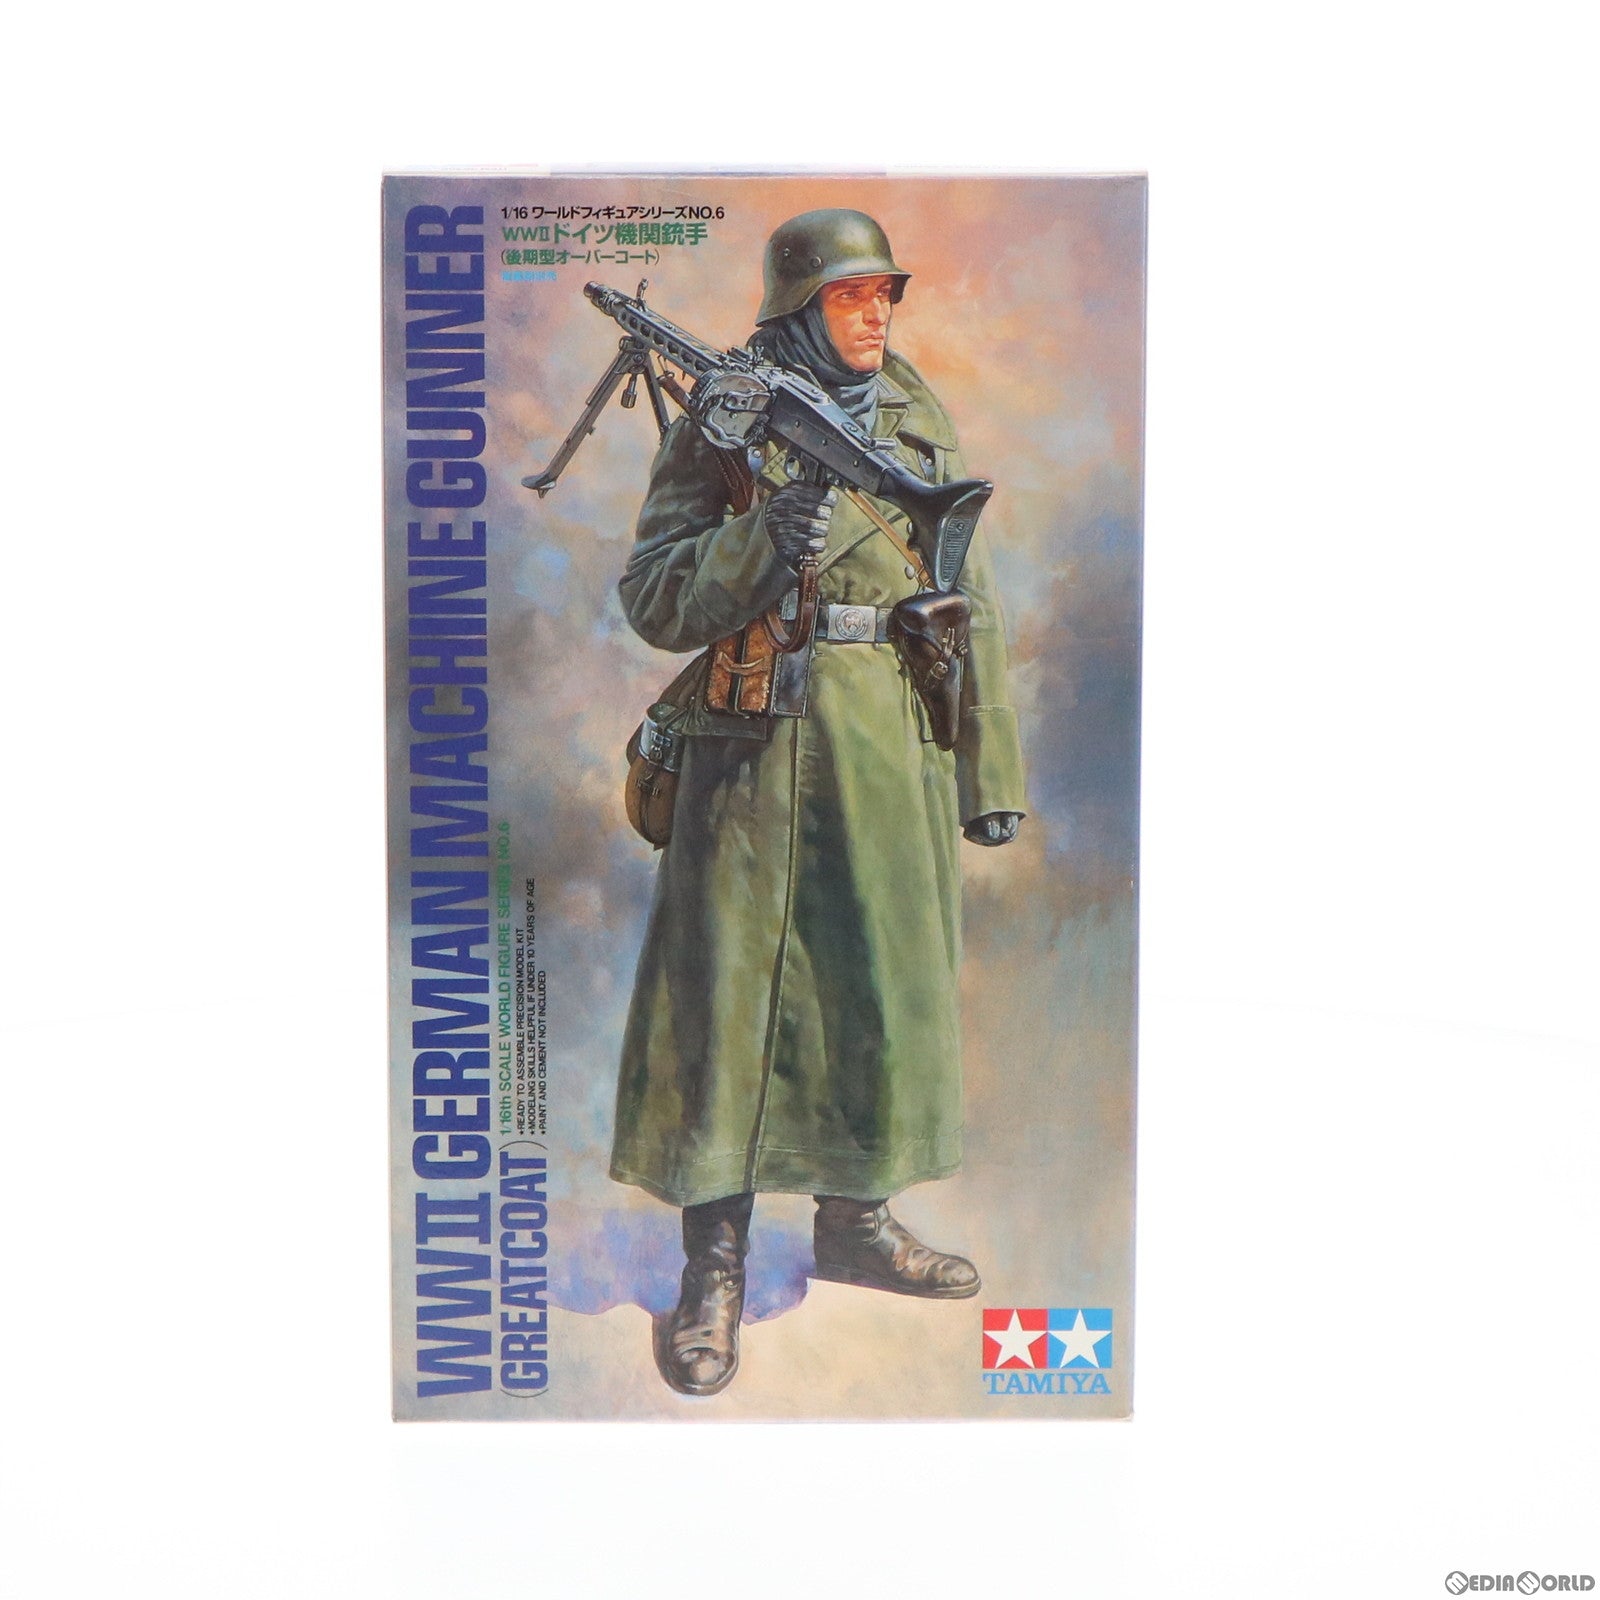 【中古即納】[PTM]1/16 WWII ドイツ機関銃手(後期型オーバーコート) ワールドフィギュアシリーズ No.6 プラモデル(36306) タミヤ(20000424)